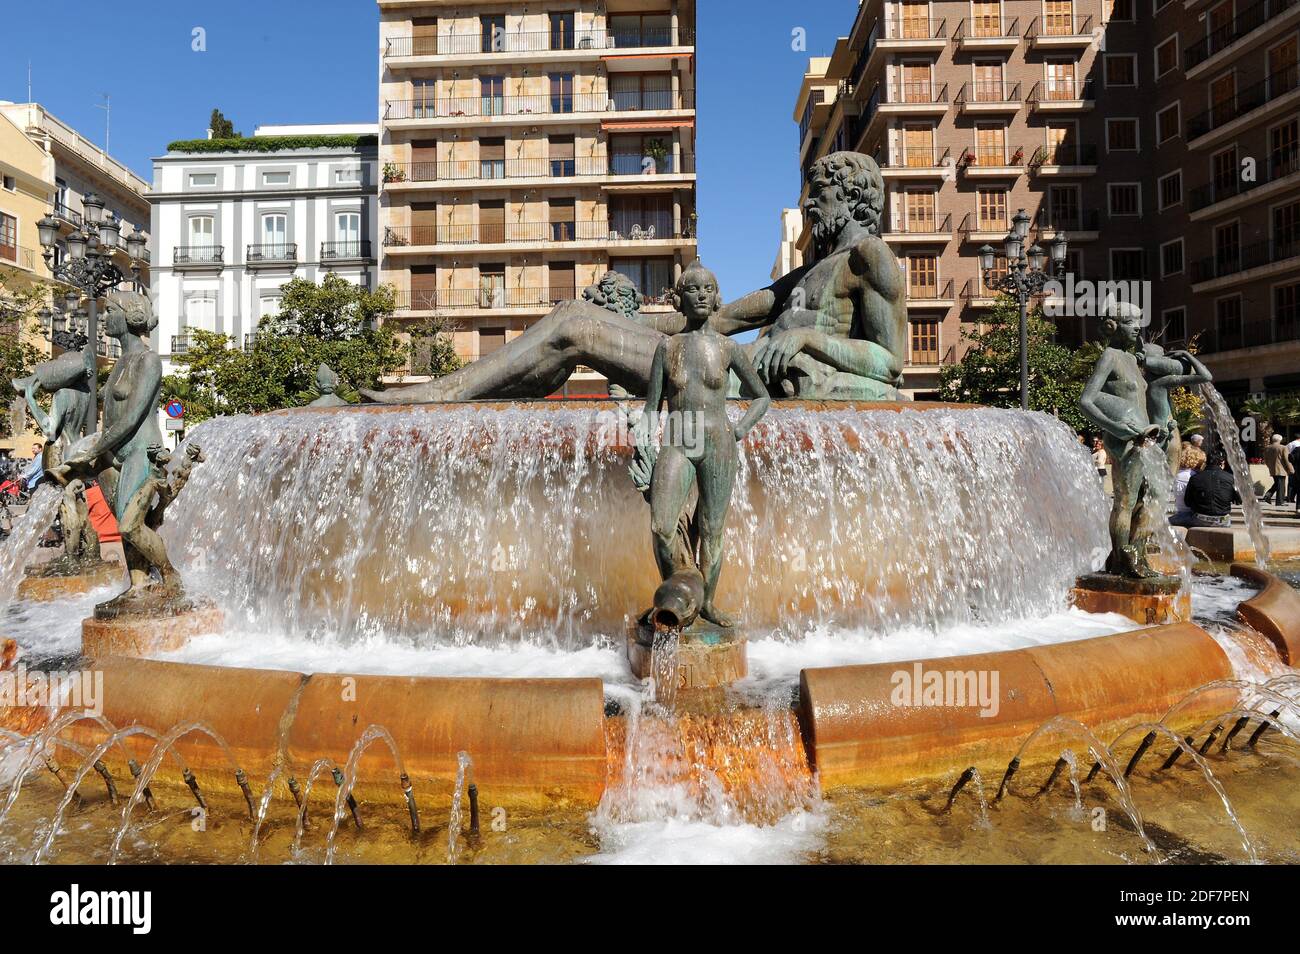 Valencia, Plaza de la Virgen with ornamental fountain (font del Turia). Comunidad Valenciana, Spain. Stock Photo